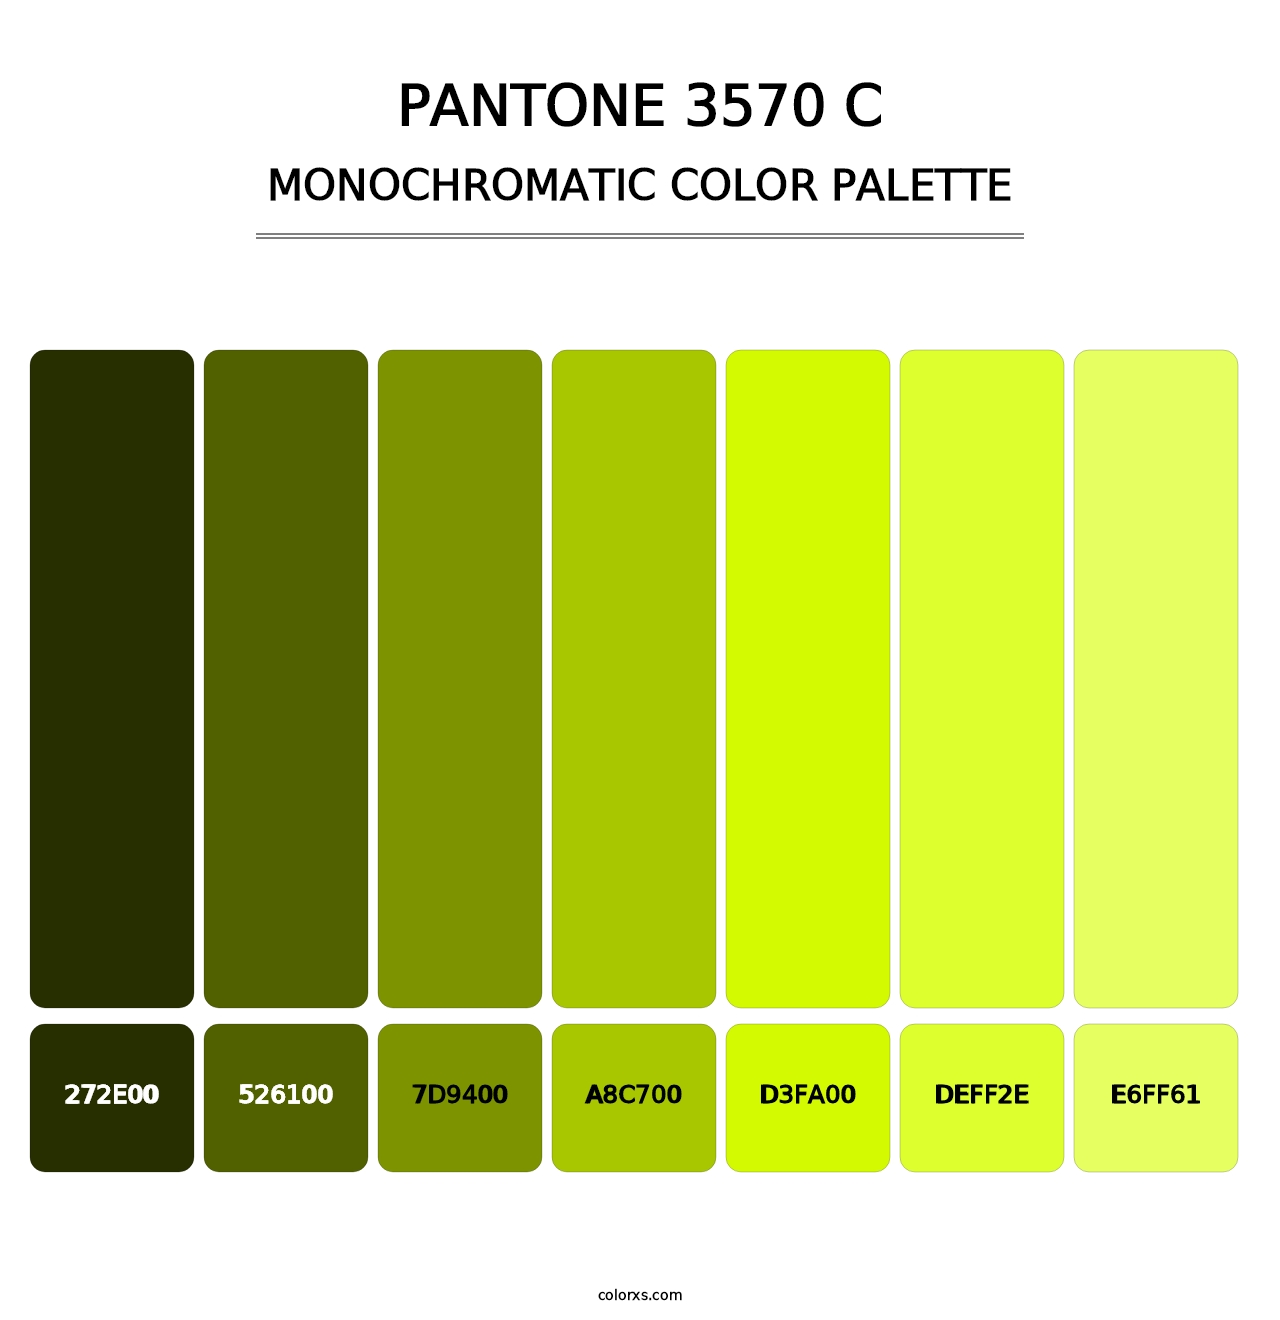 PANTONE 3570 C - Monochromatic Color Palette